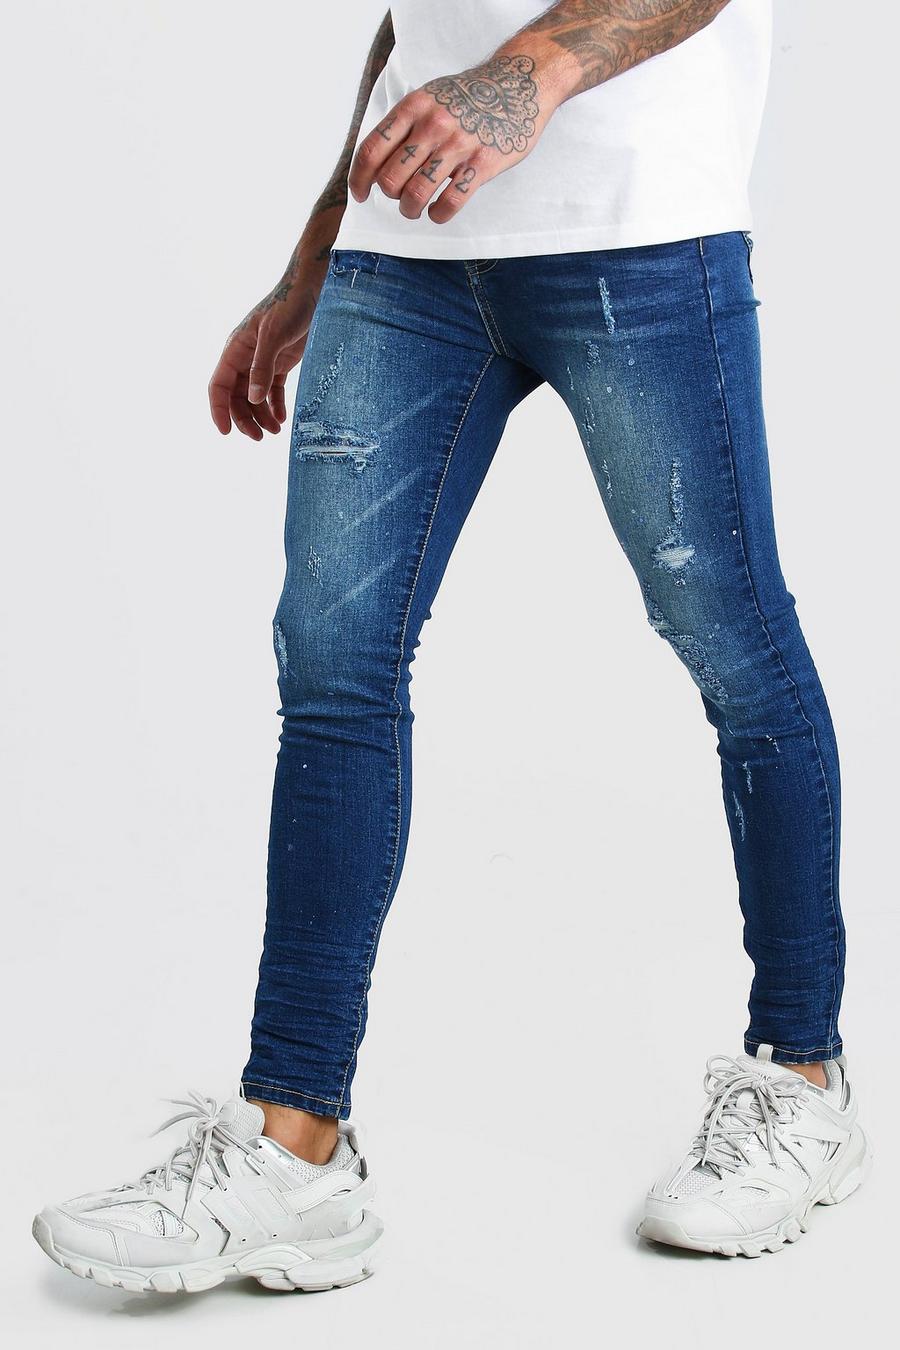 אינדיגו דהוי סופר סקיני ג'ינס עם קרעים וטלאים בדגומת כתמי צבע image number 1